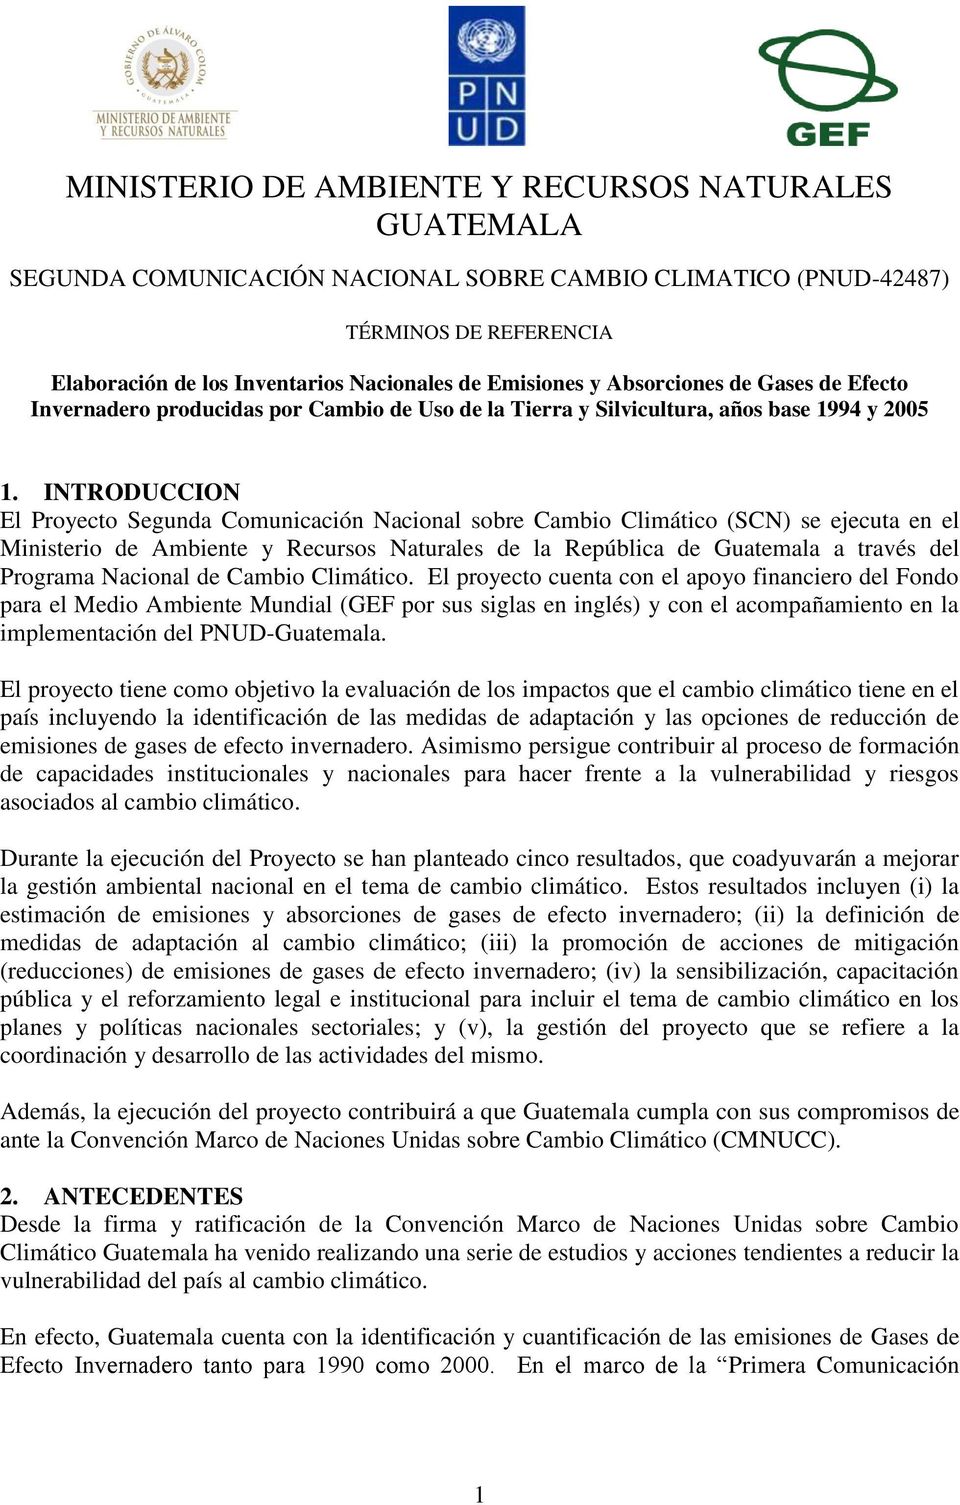 INTRODUCCION El Proyecto Segunda Comunicación Nacional sobre Cambio Climático (SCN) se ejecuta en el Ministerio de Ambiente y Recursos Naturales de la República de Guatemala a través del Programa